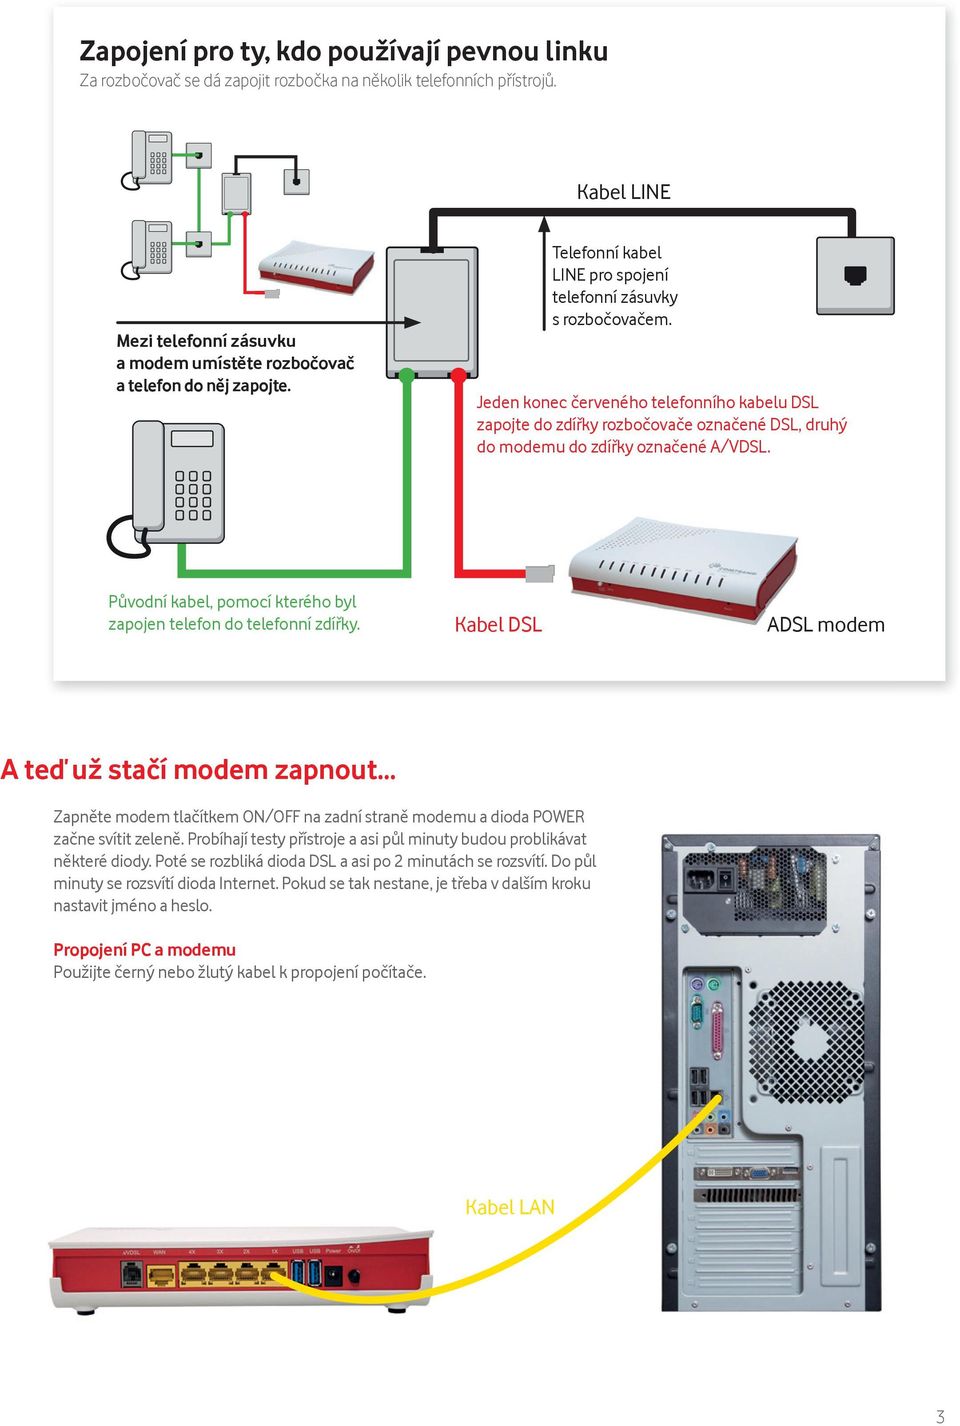 Jeden konec červeného telefonního kabelu DSL zapojte do zdířky rozbočovače označené DSL, druhý do modemu do zdířky označené A/VDSL.